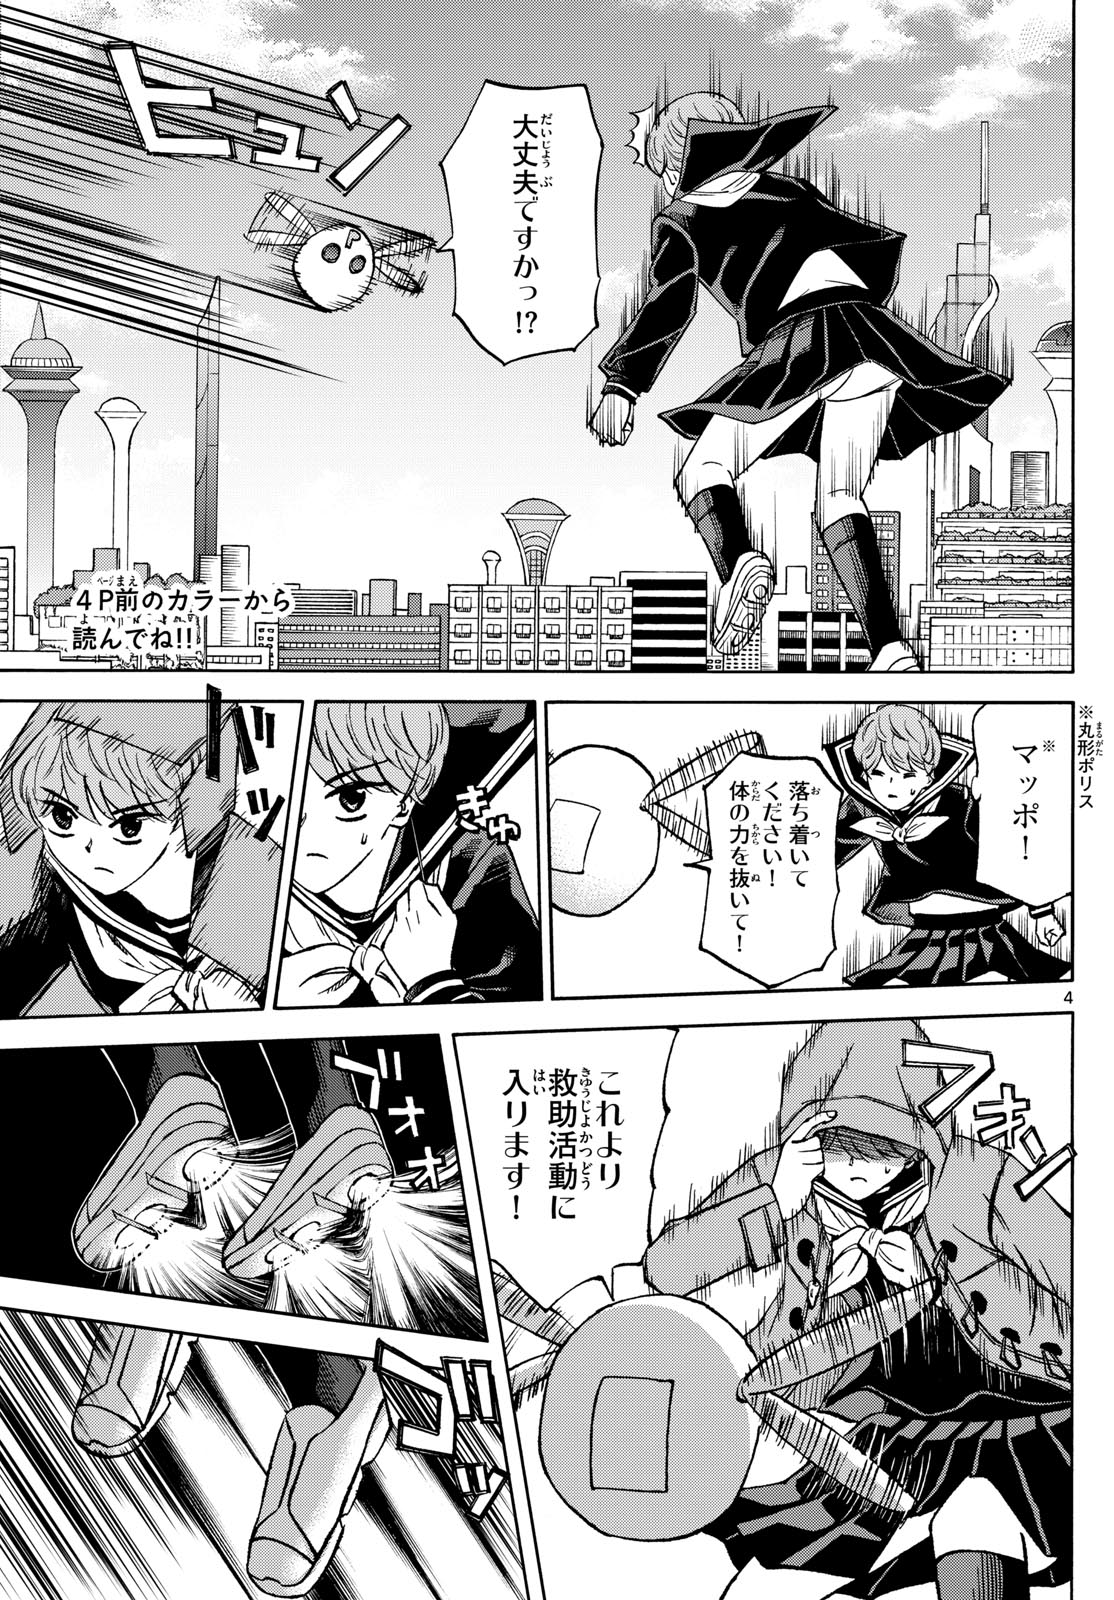 Tatsu to Ichigo - Chapter 182 - Page 4